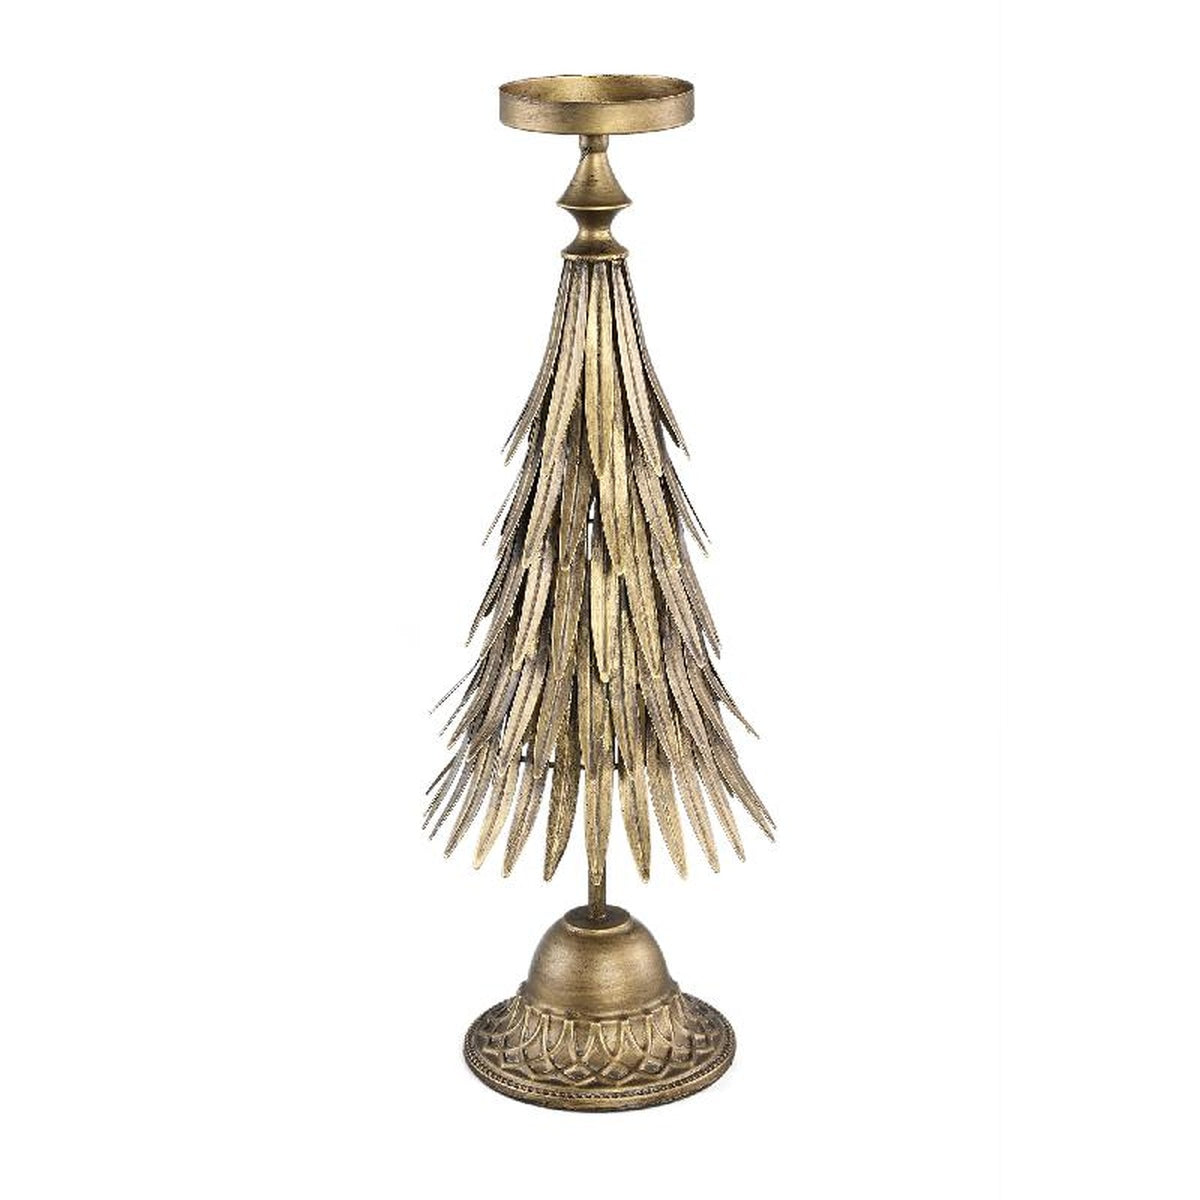 Ptmd objet décoratif wellz - 22x22x56 cm - métal - l'or